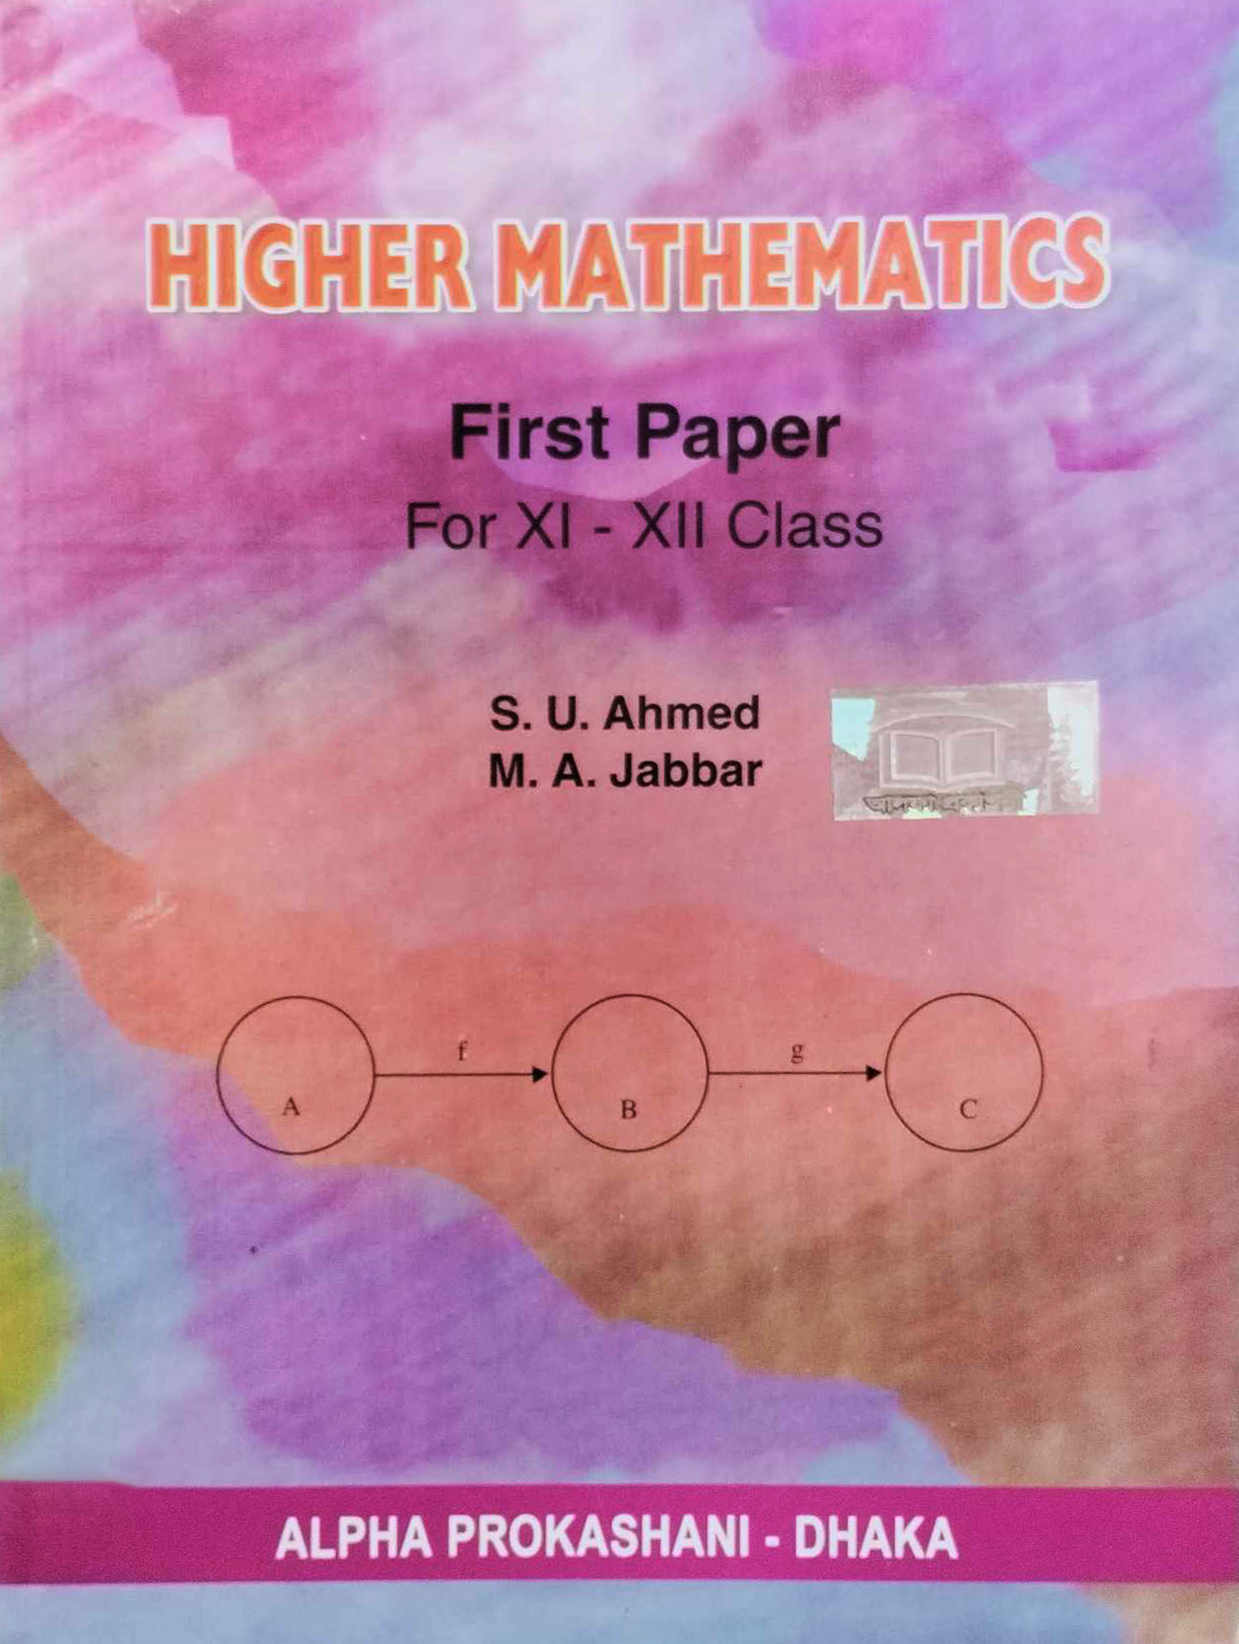 Higher Mathematics - First Paper (Class 11-12) - English Version (পেপারব্যাক)